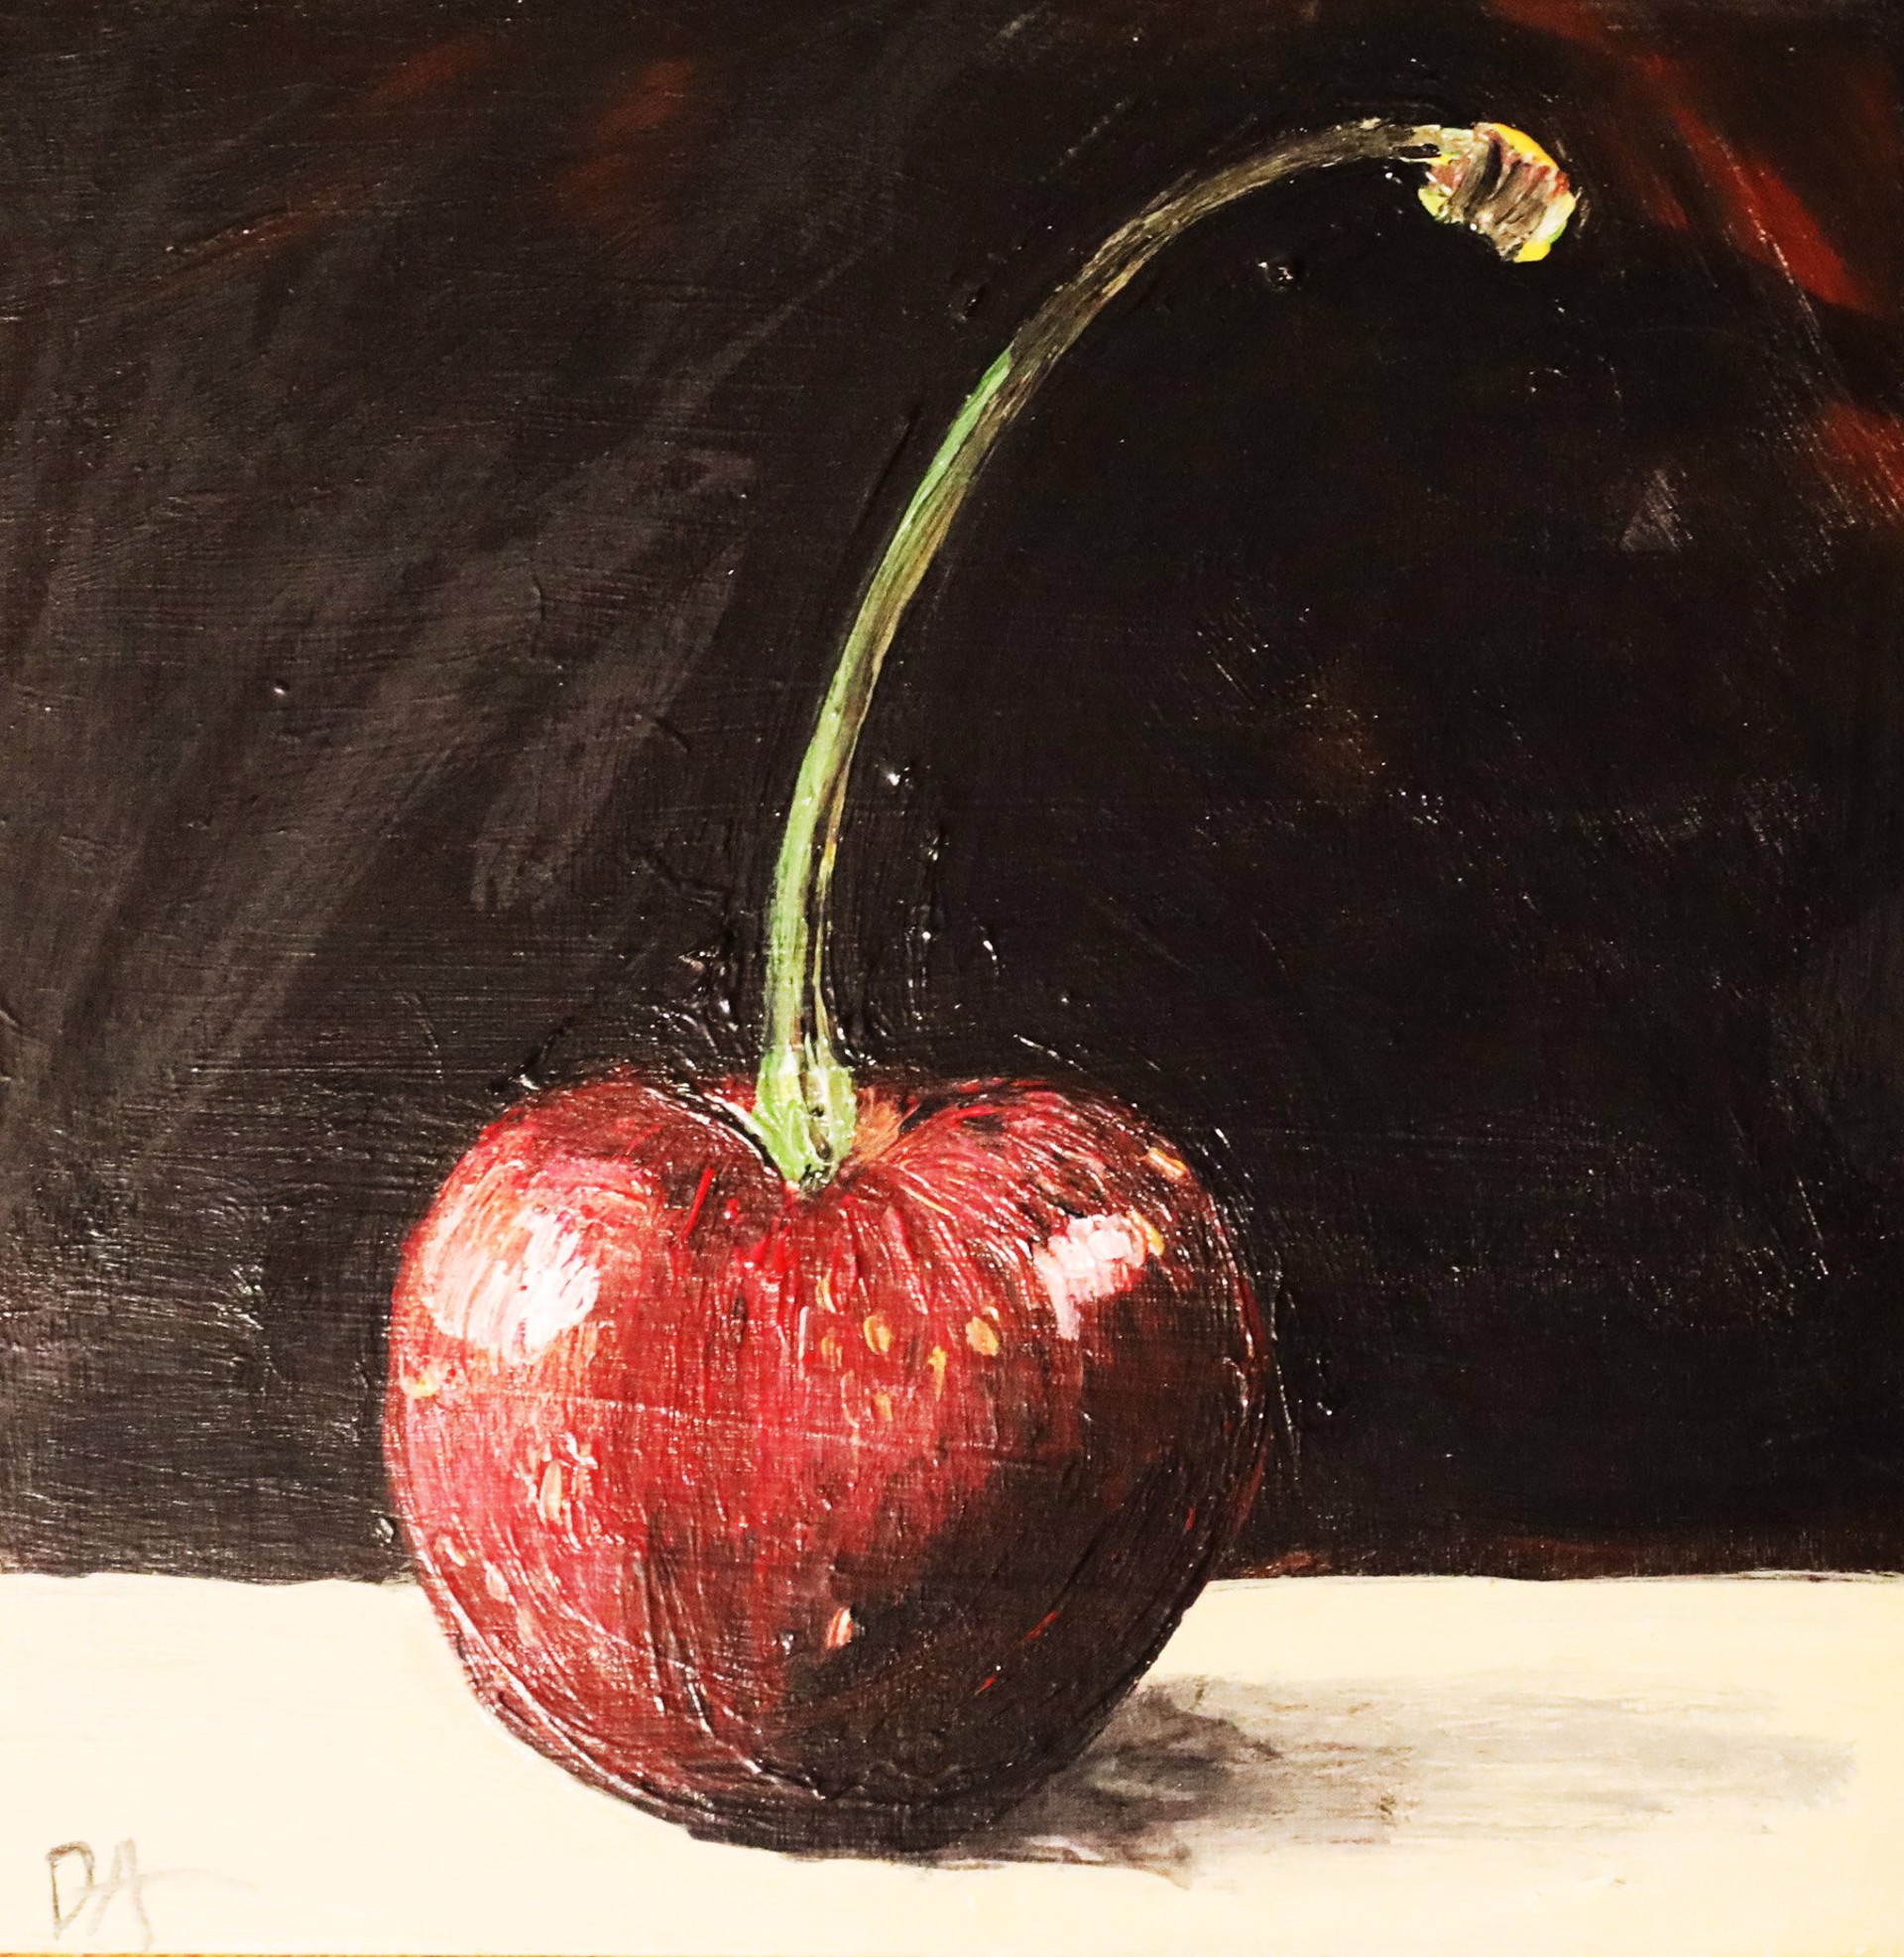 Cherry On Top by Douglas Alvarez